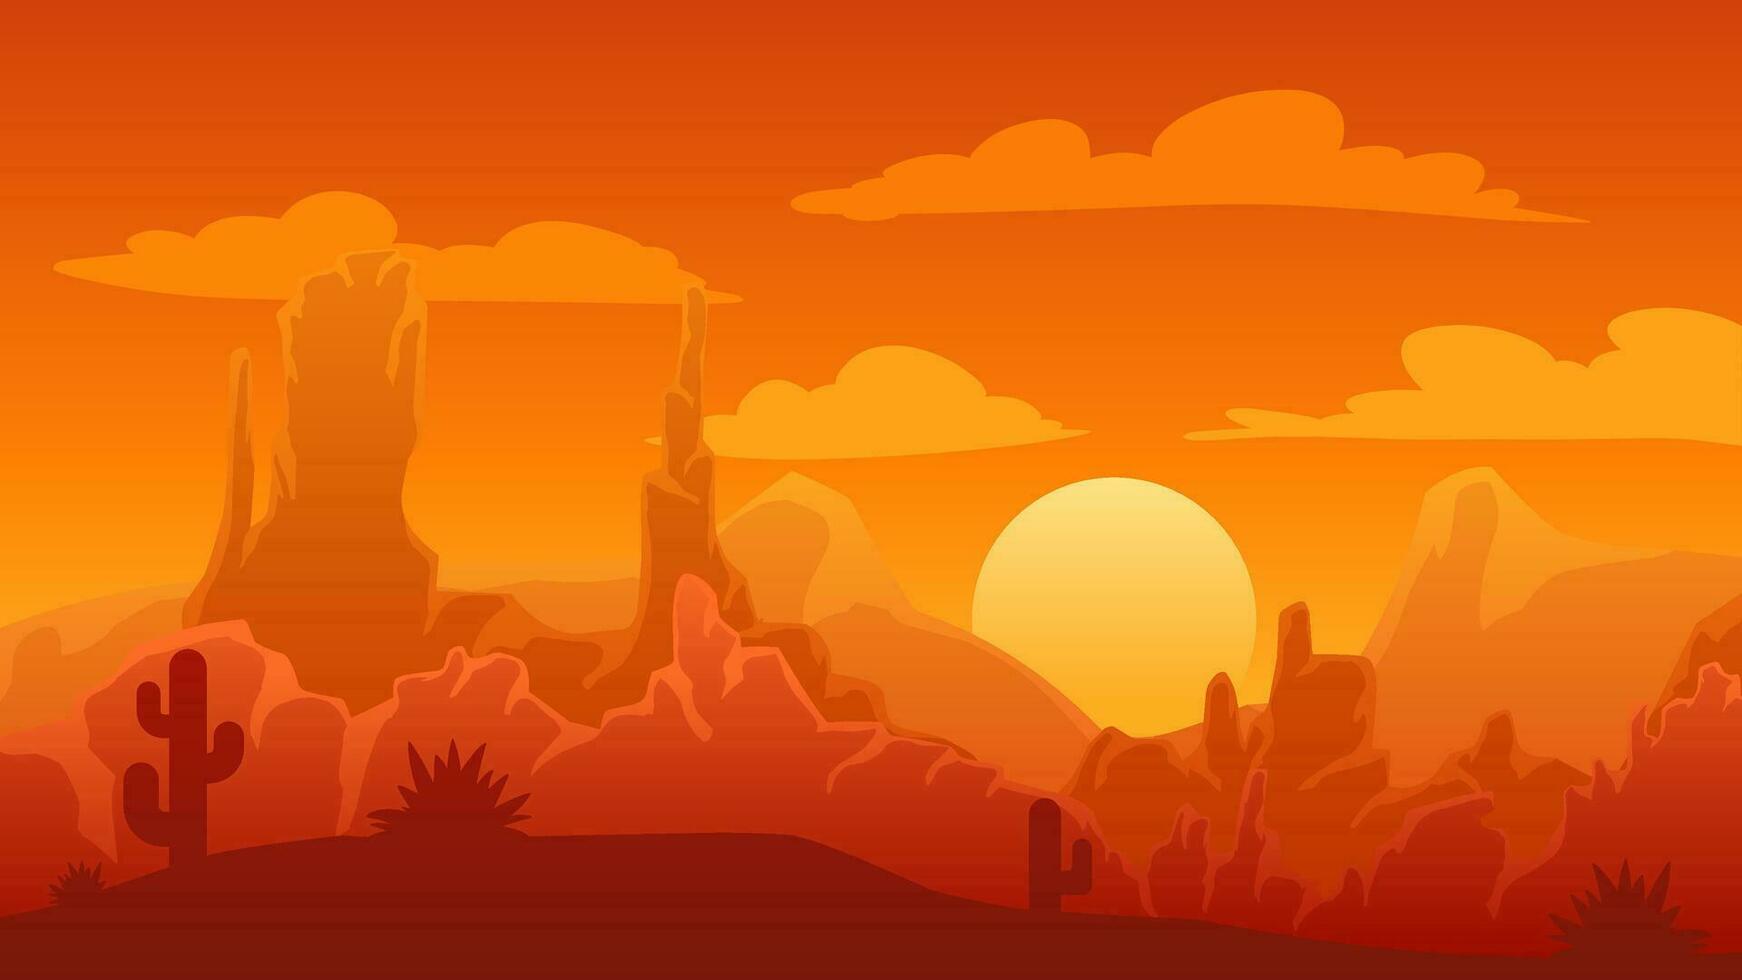 Wüste Landschaft Vektor Illustration. Schlucht Wüste Landschaft mit Kaktus, Stein und Sonnenuntergang Himmel. amerikanisch Wüste Silhouette Landschaft zum Hintergrund, Hintergrund, Anzeige oder Landung Seite